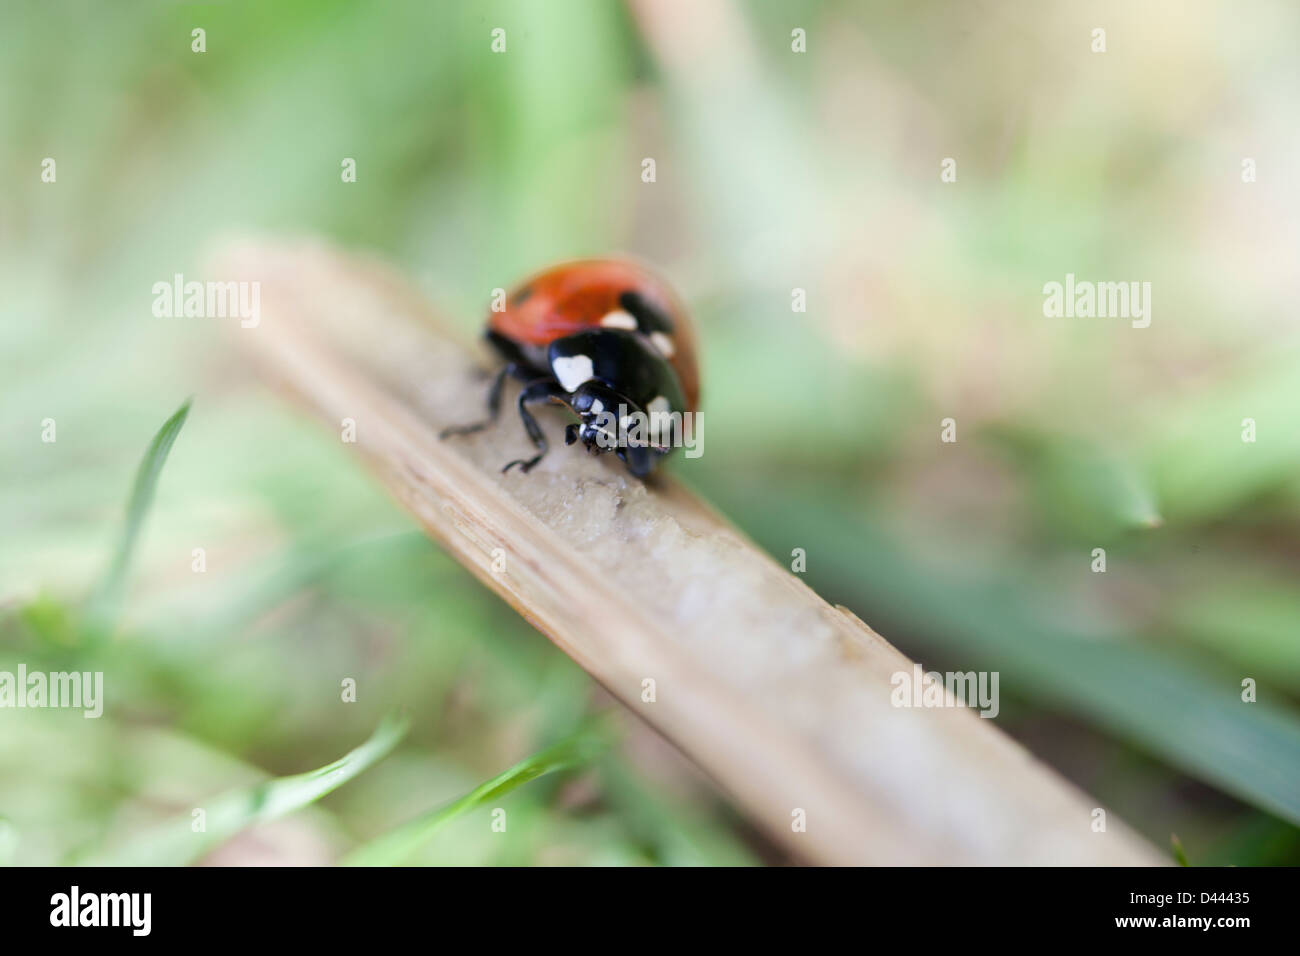 A seven dots ladybug on a stick  Stock Photo